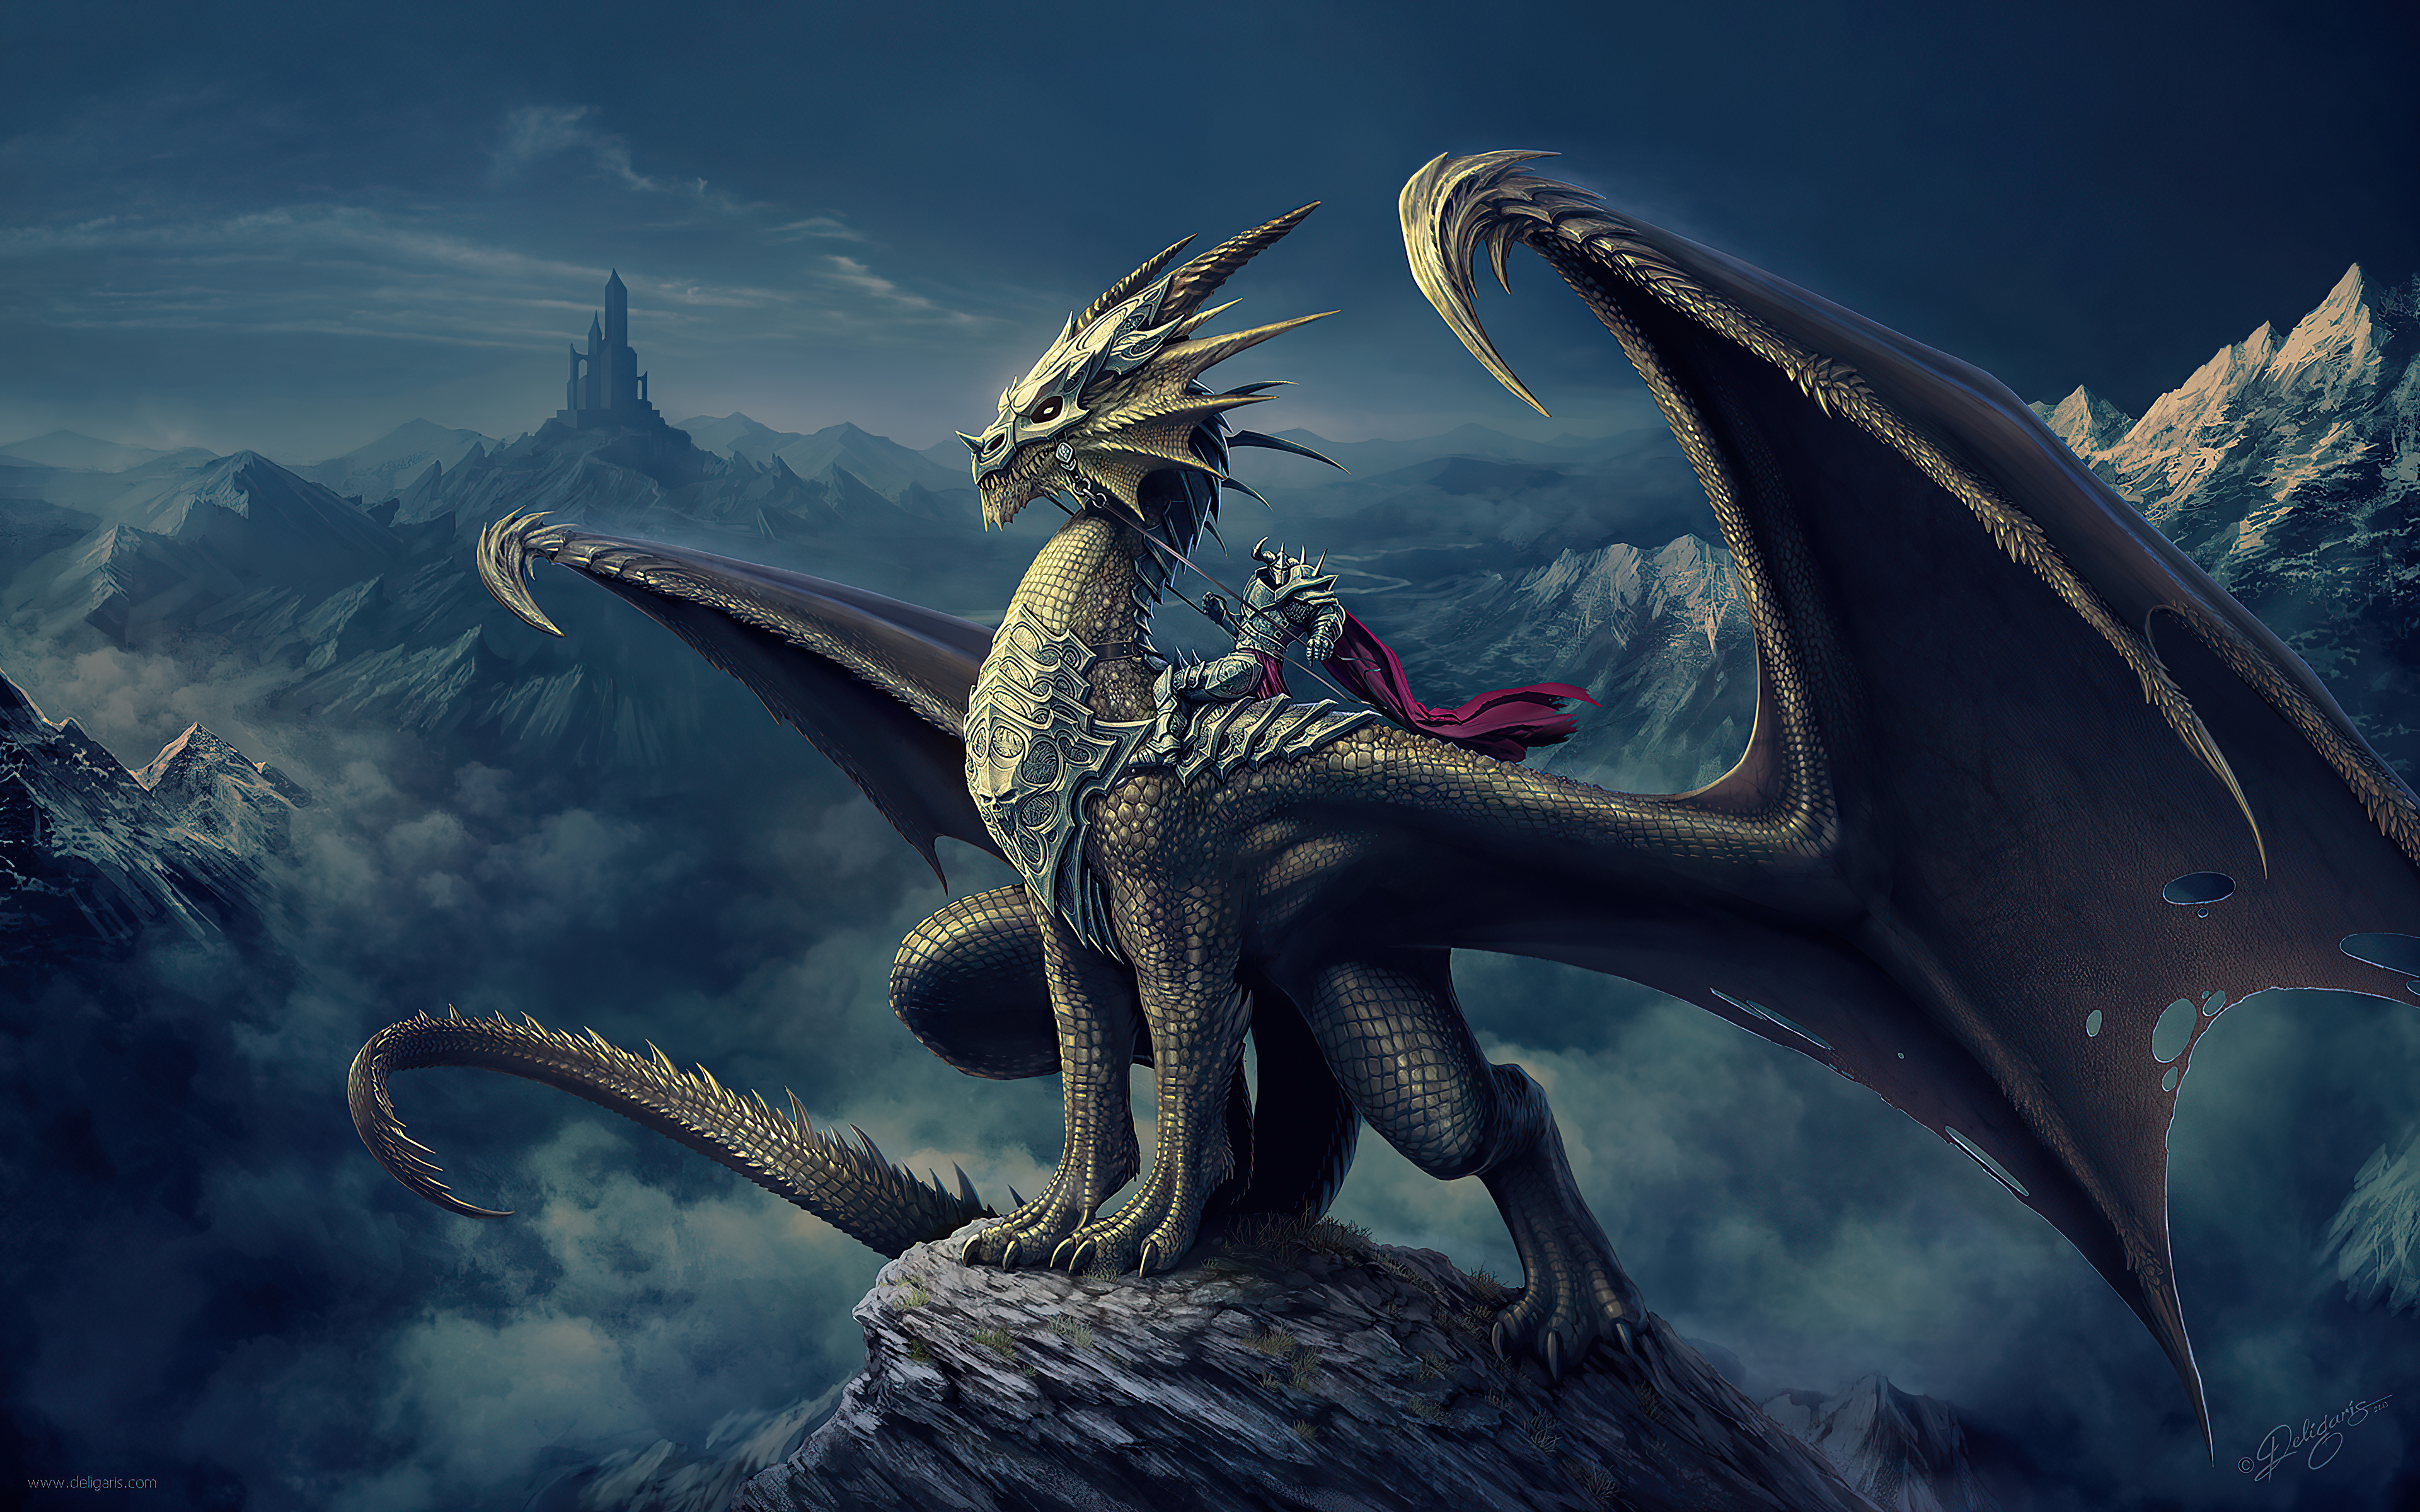 Фото цифровое искусство дракон произведение искусства - бесплатные картинки на Fonwall